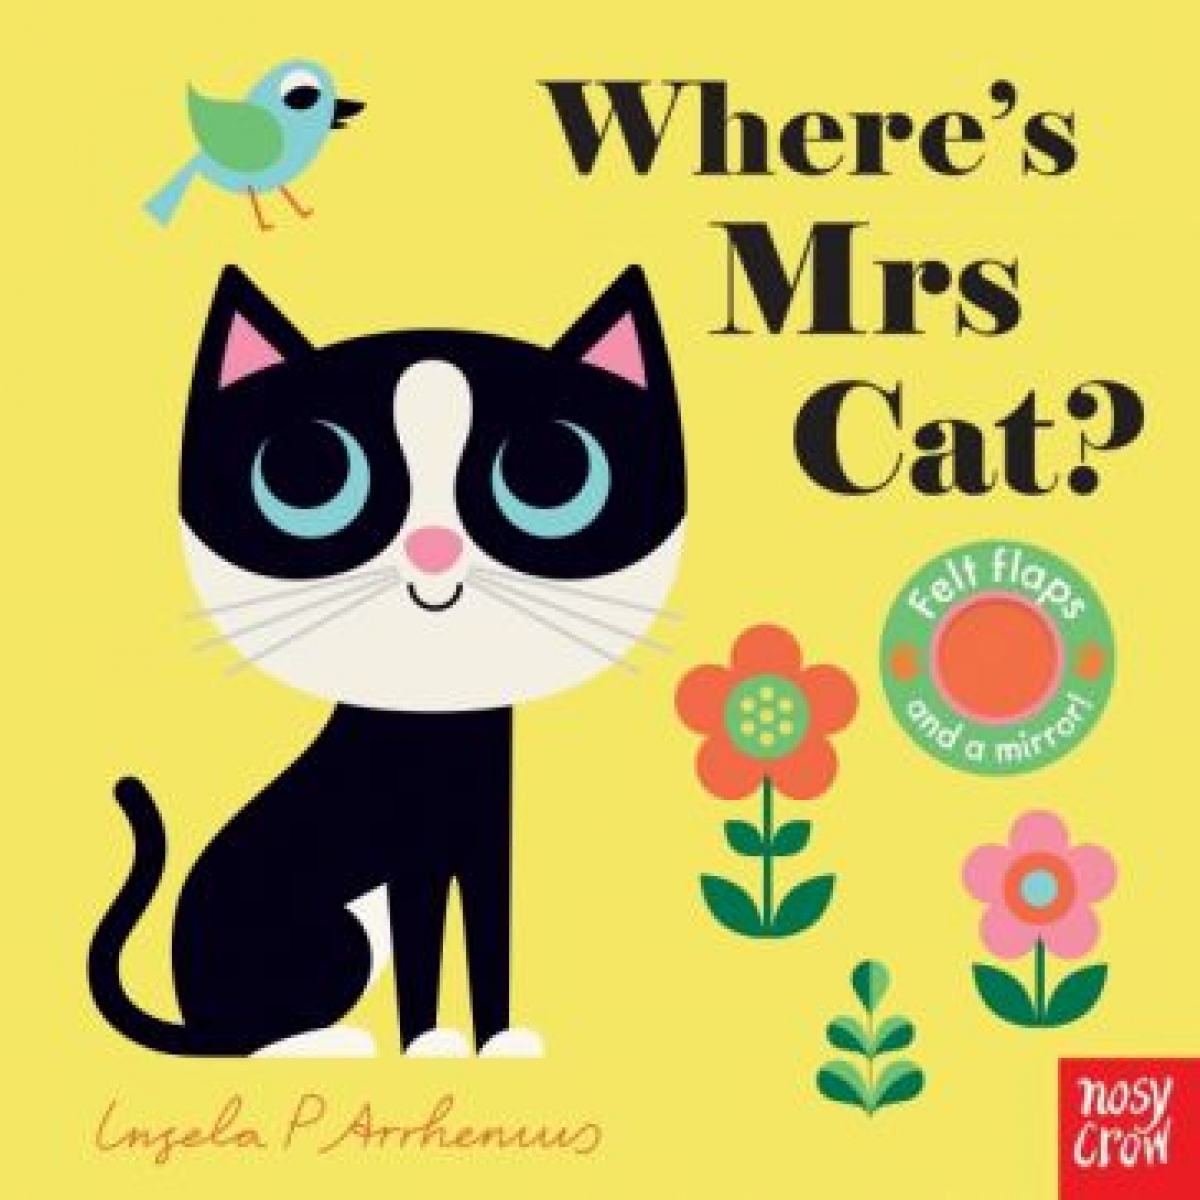 Arrhenius Ingela P. Where's Mrs Cat? 